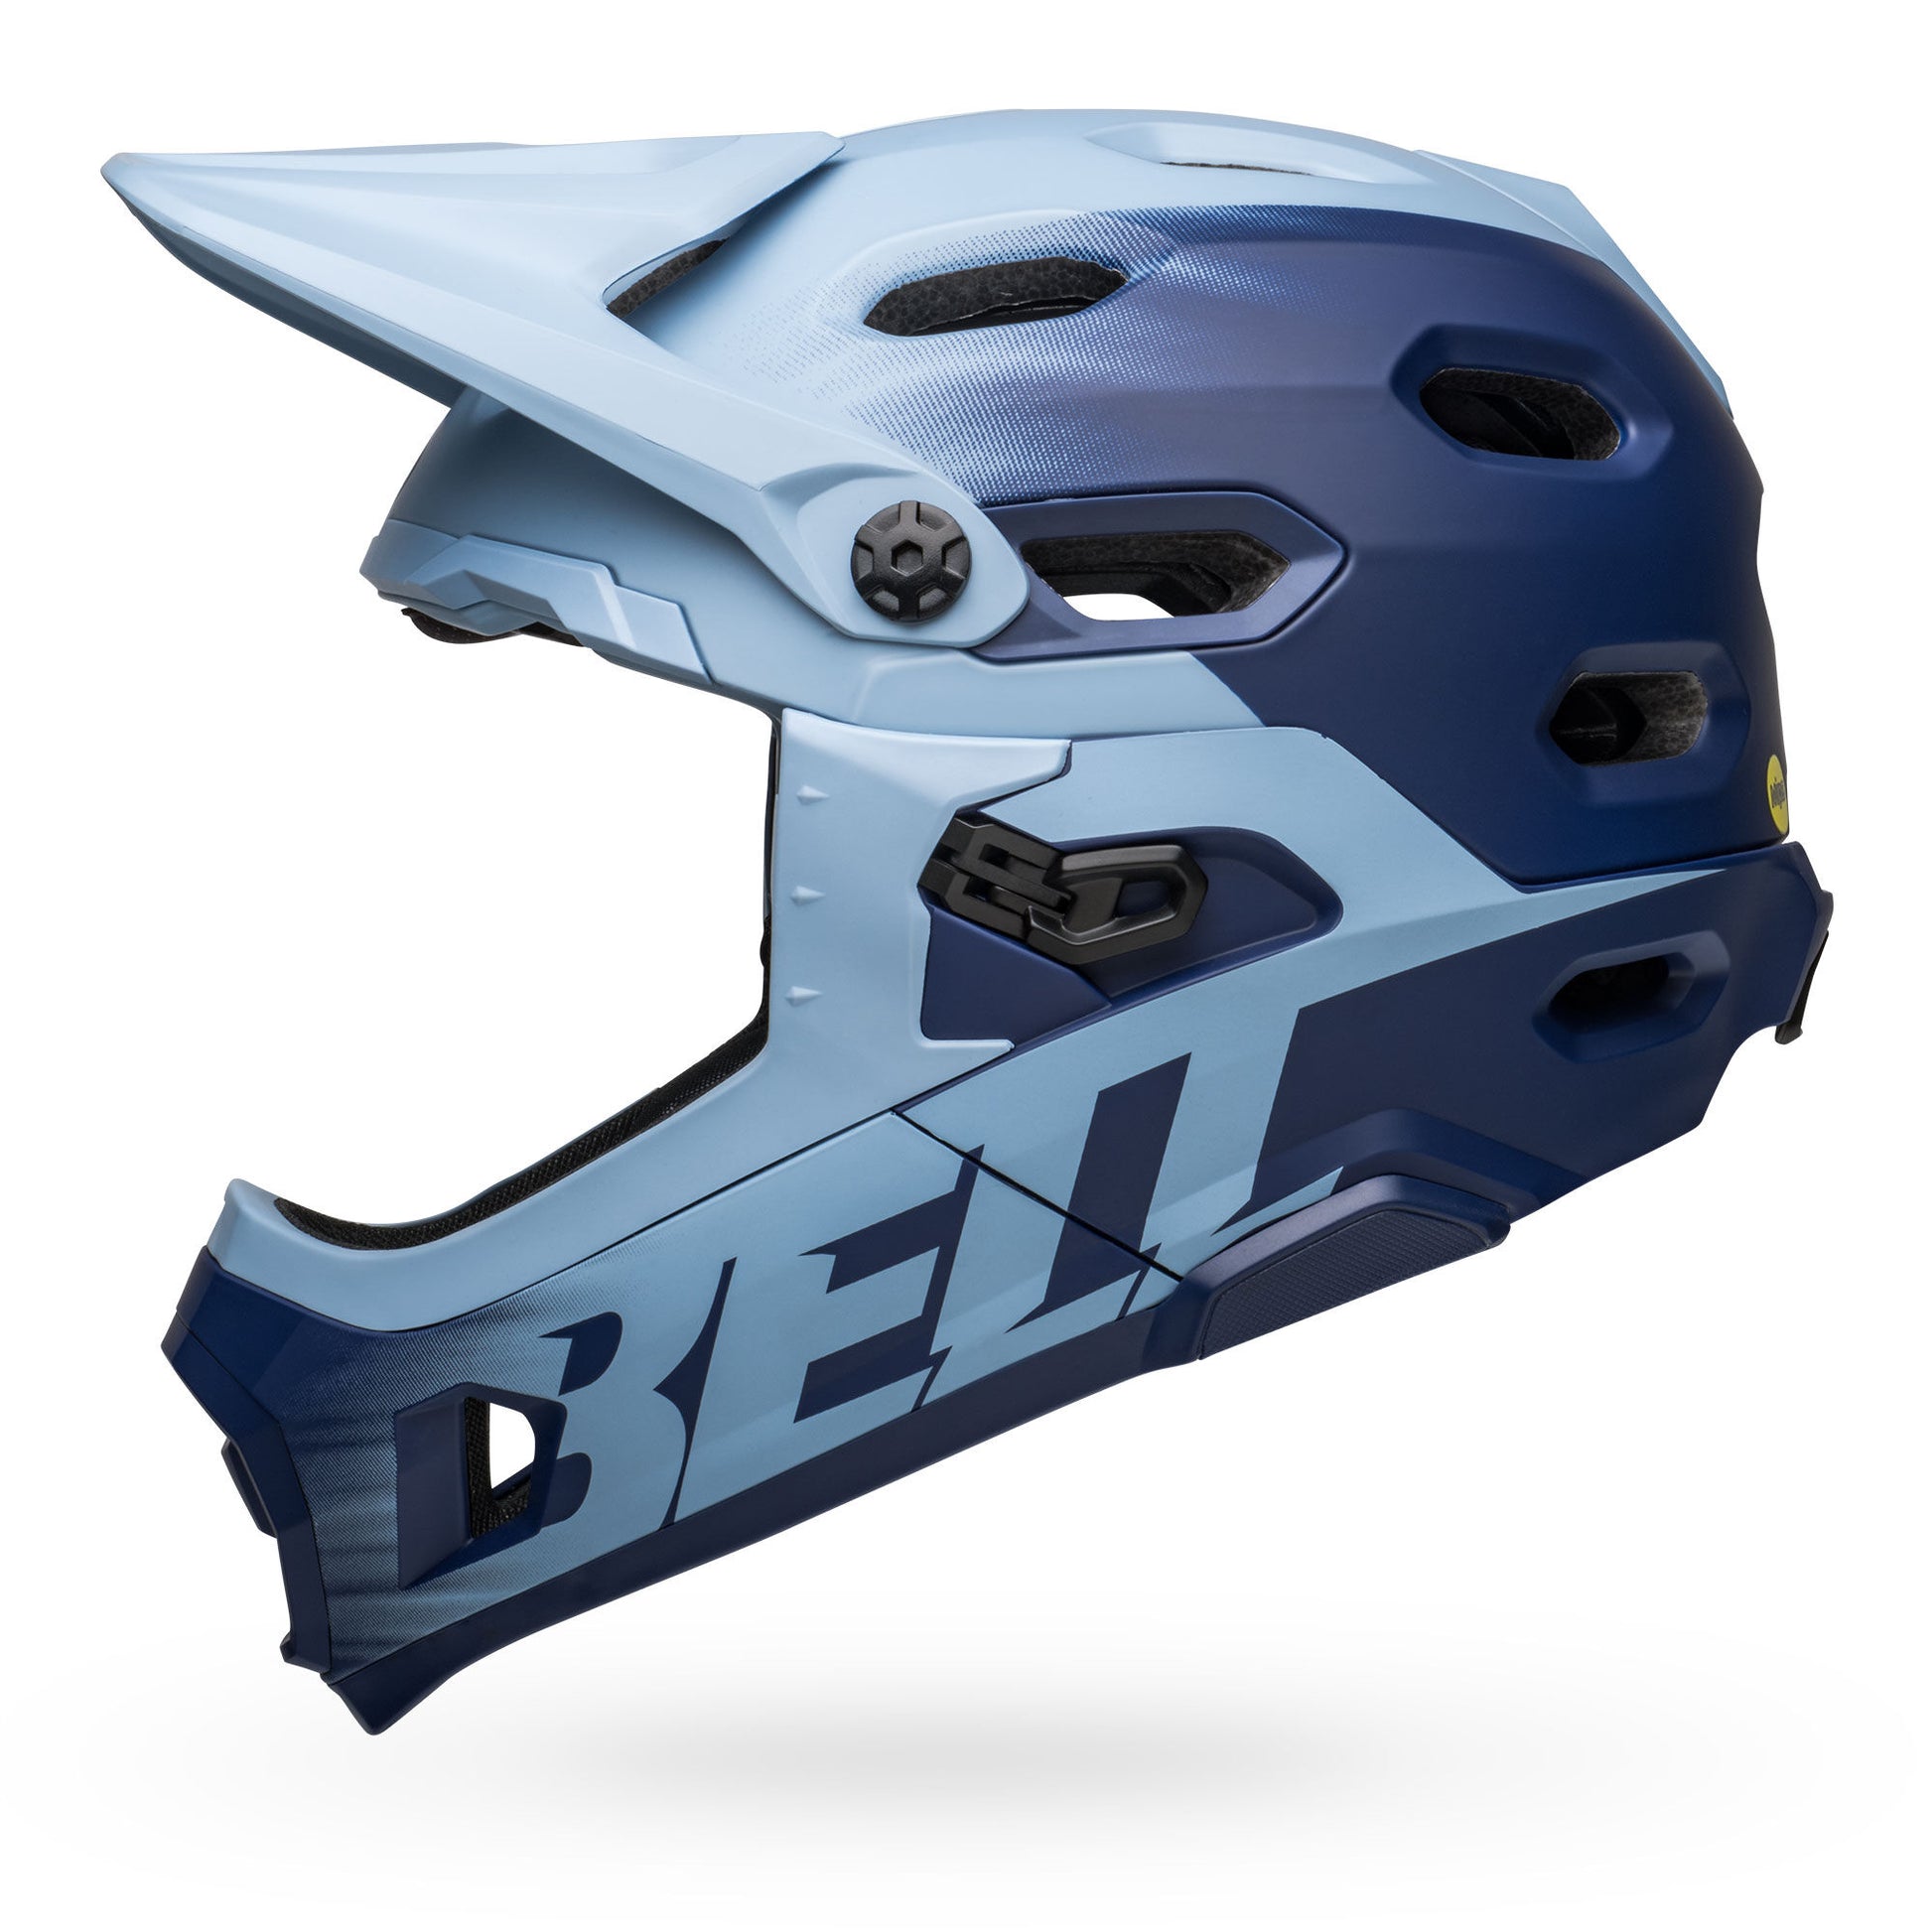 Bell Super DH Spherical Helmet Matte Light Blue/Navy Bike Helmets